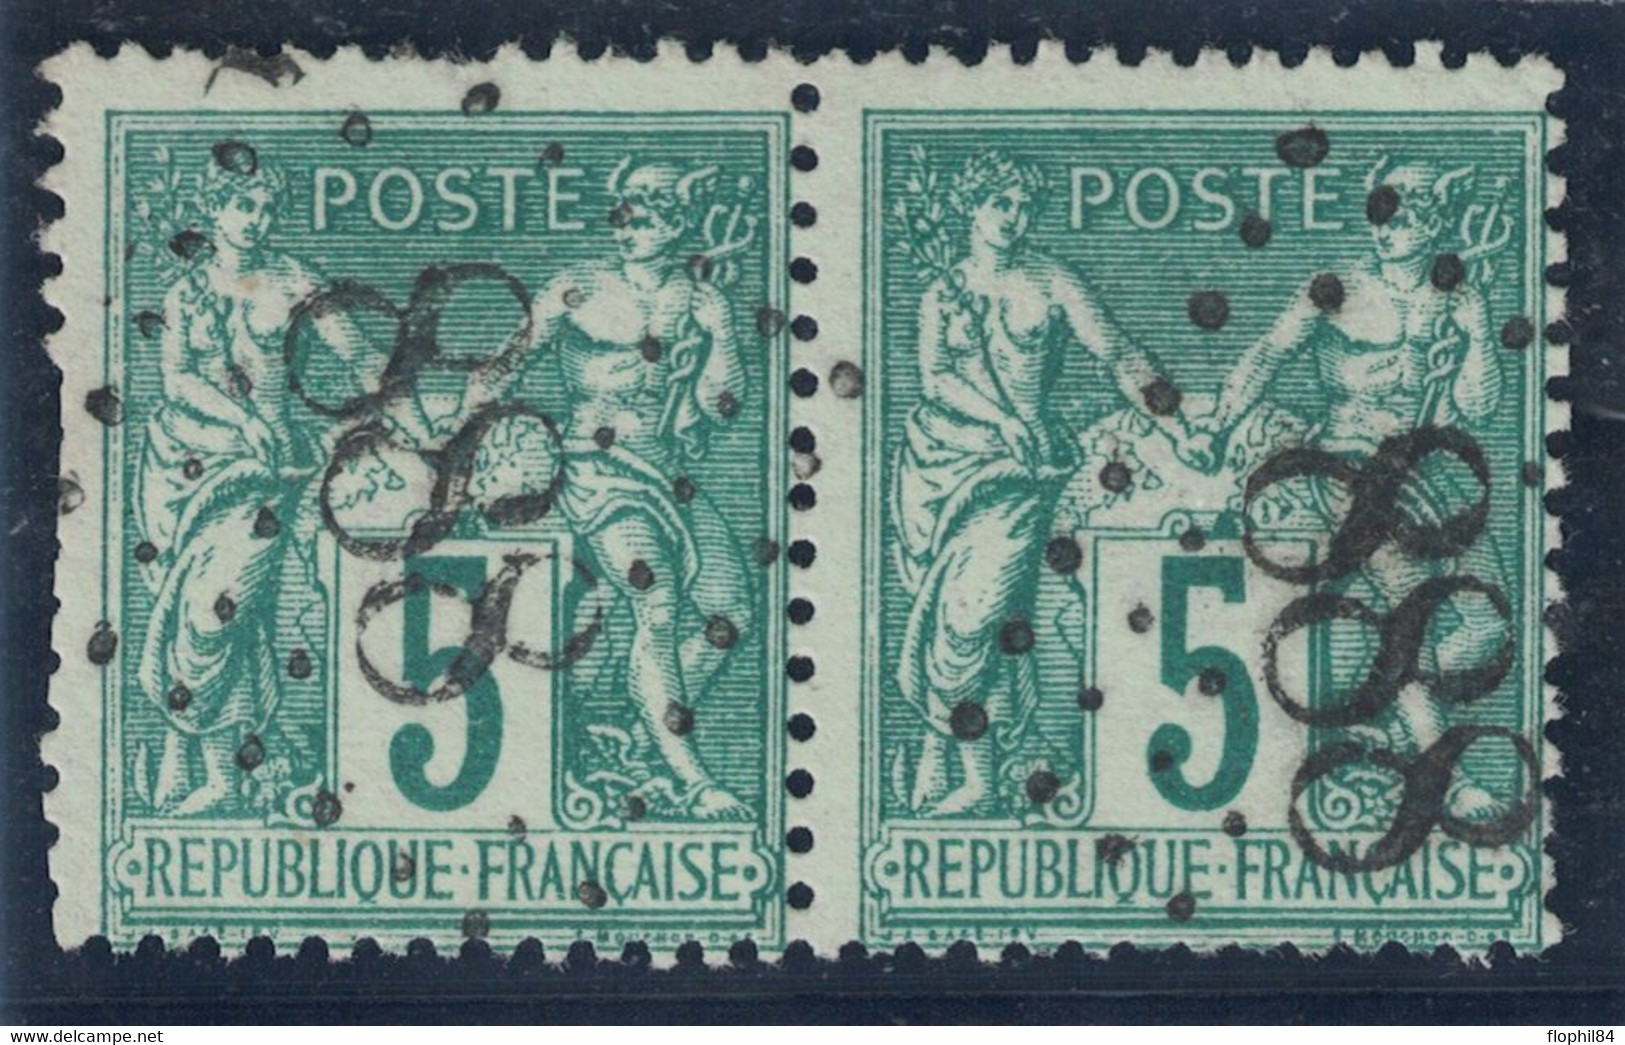 SAGE - N°75 PAIRE - JOUR DE L'AN - LOSANGE GROS CHIFFRES 888 - RARE. - 1876-1898 Sage (Type II)